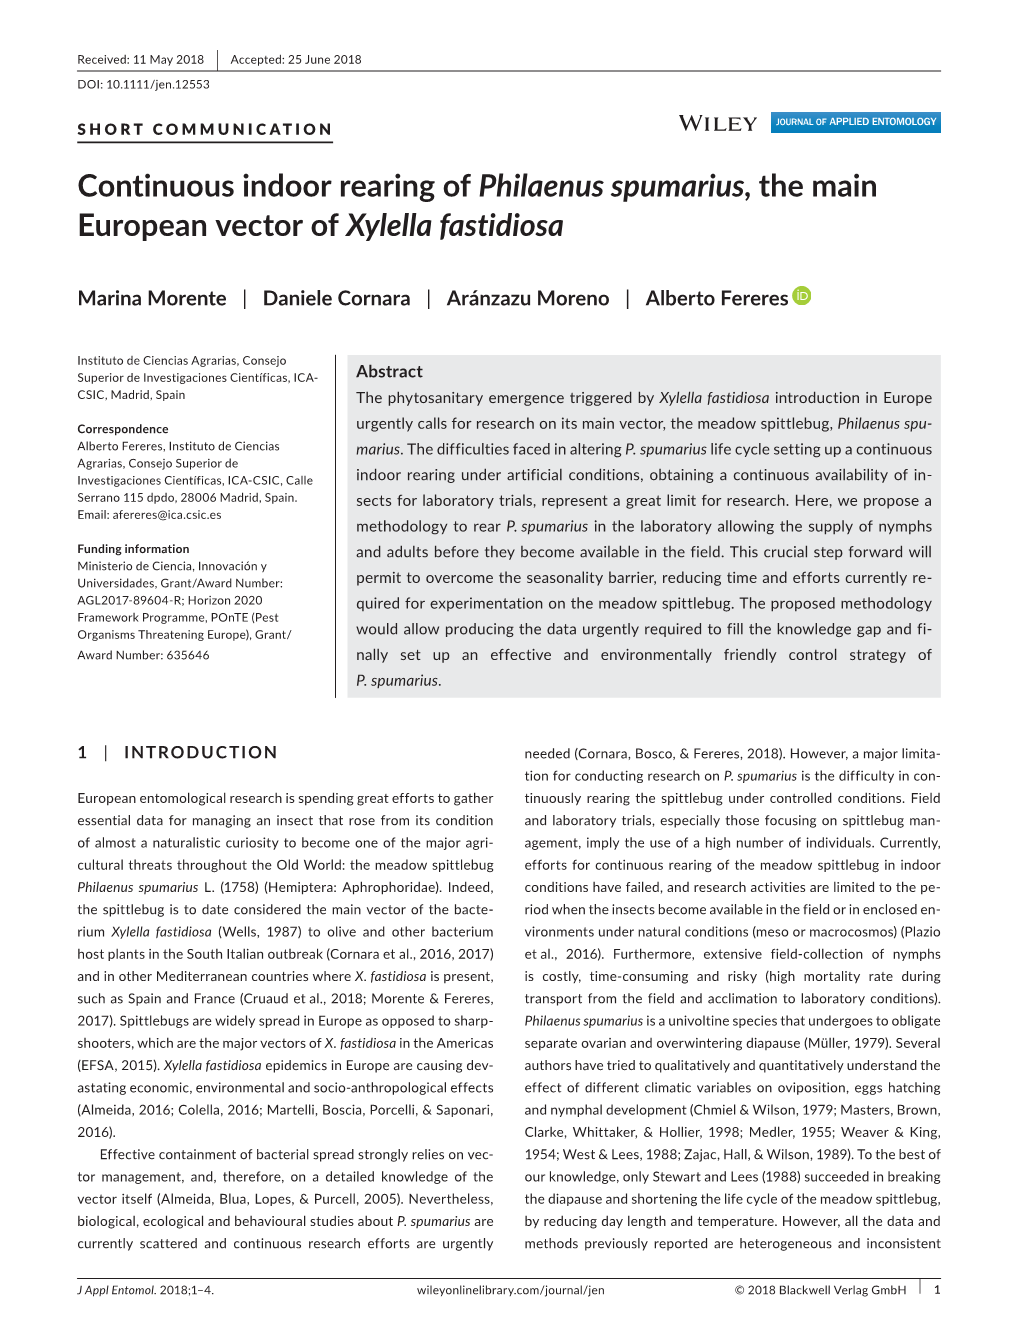 Continuous Indoor Rearing of Philaenus Spumarius, the Main European Vector of Xylella Fastidiosa